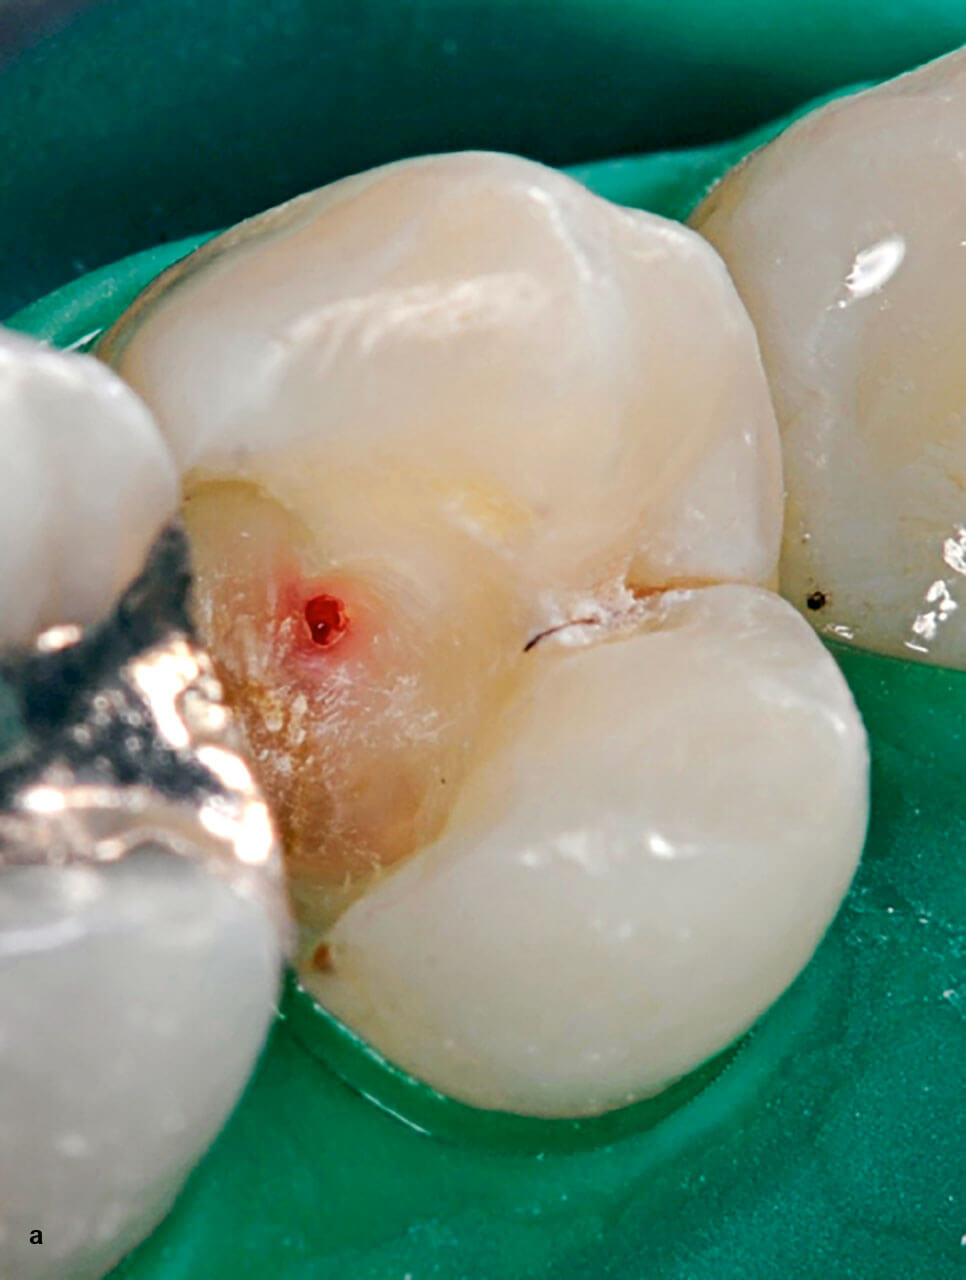 Abb. 8a Während der Exkavation exponierte Pulpa an Zahn 24, hier mit stehender Blutung.